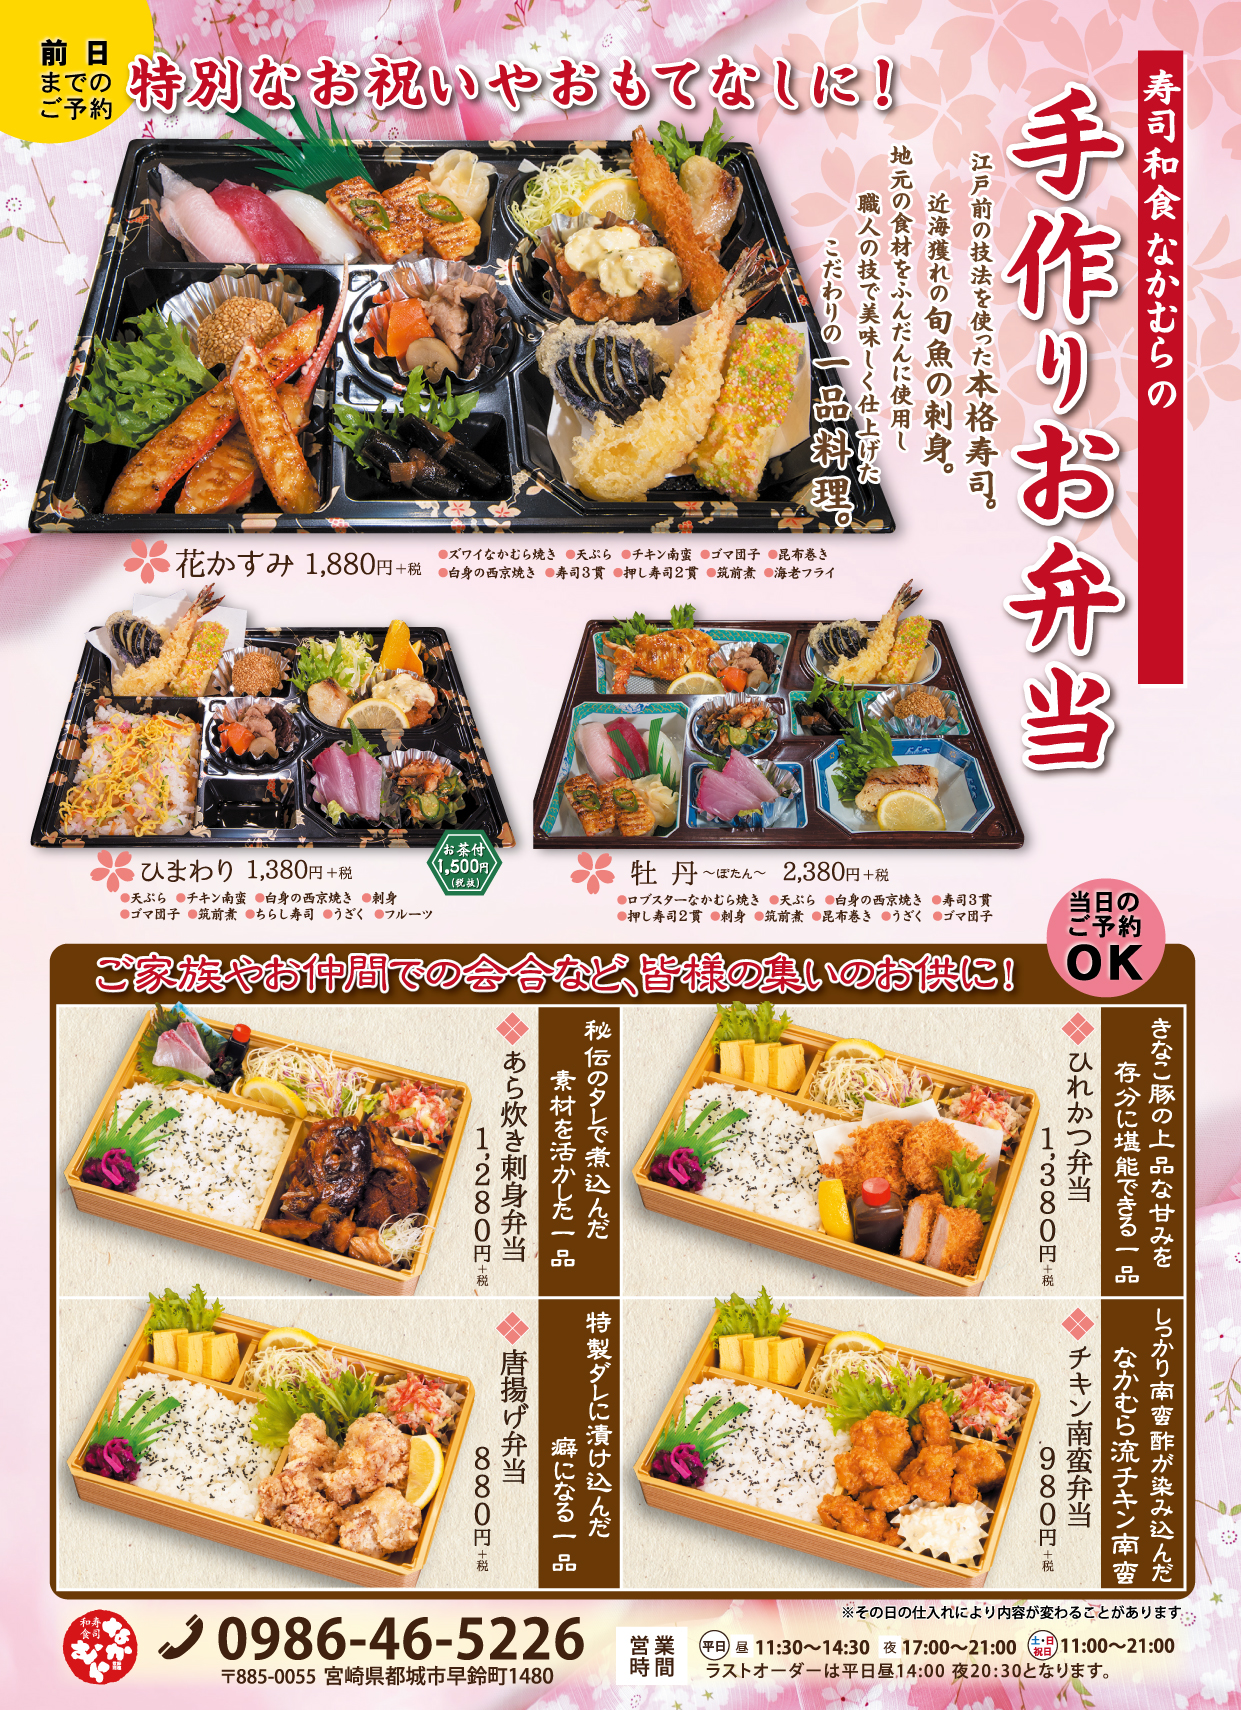 今年はおうちで母の日 好評予約受付中 寿司和食 なかむら 都城の寿司和食の店